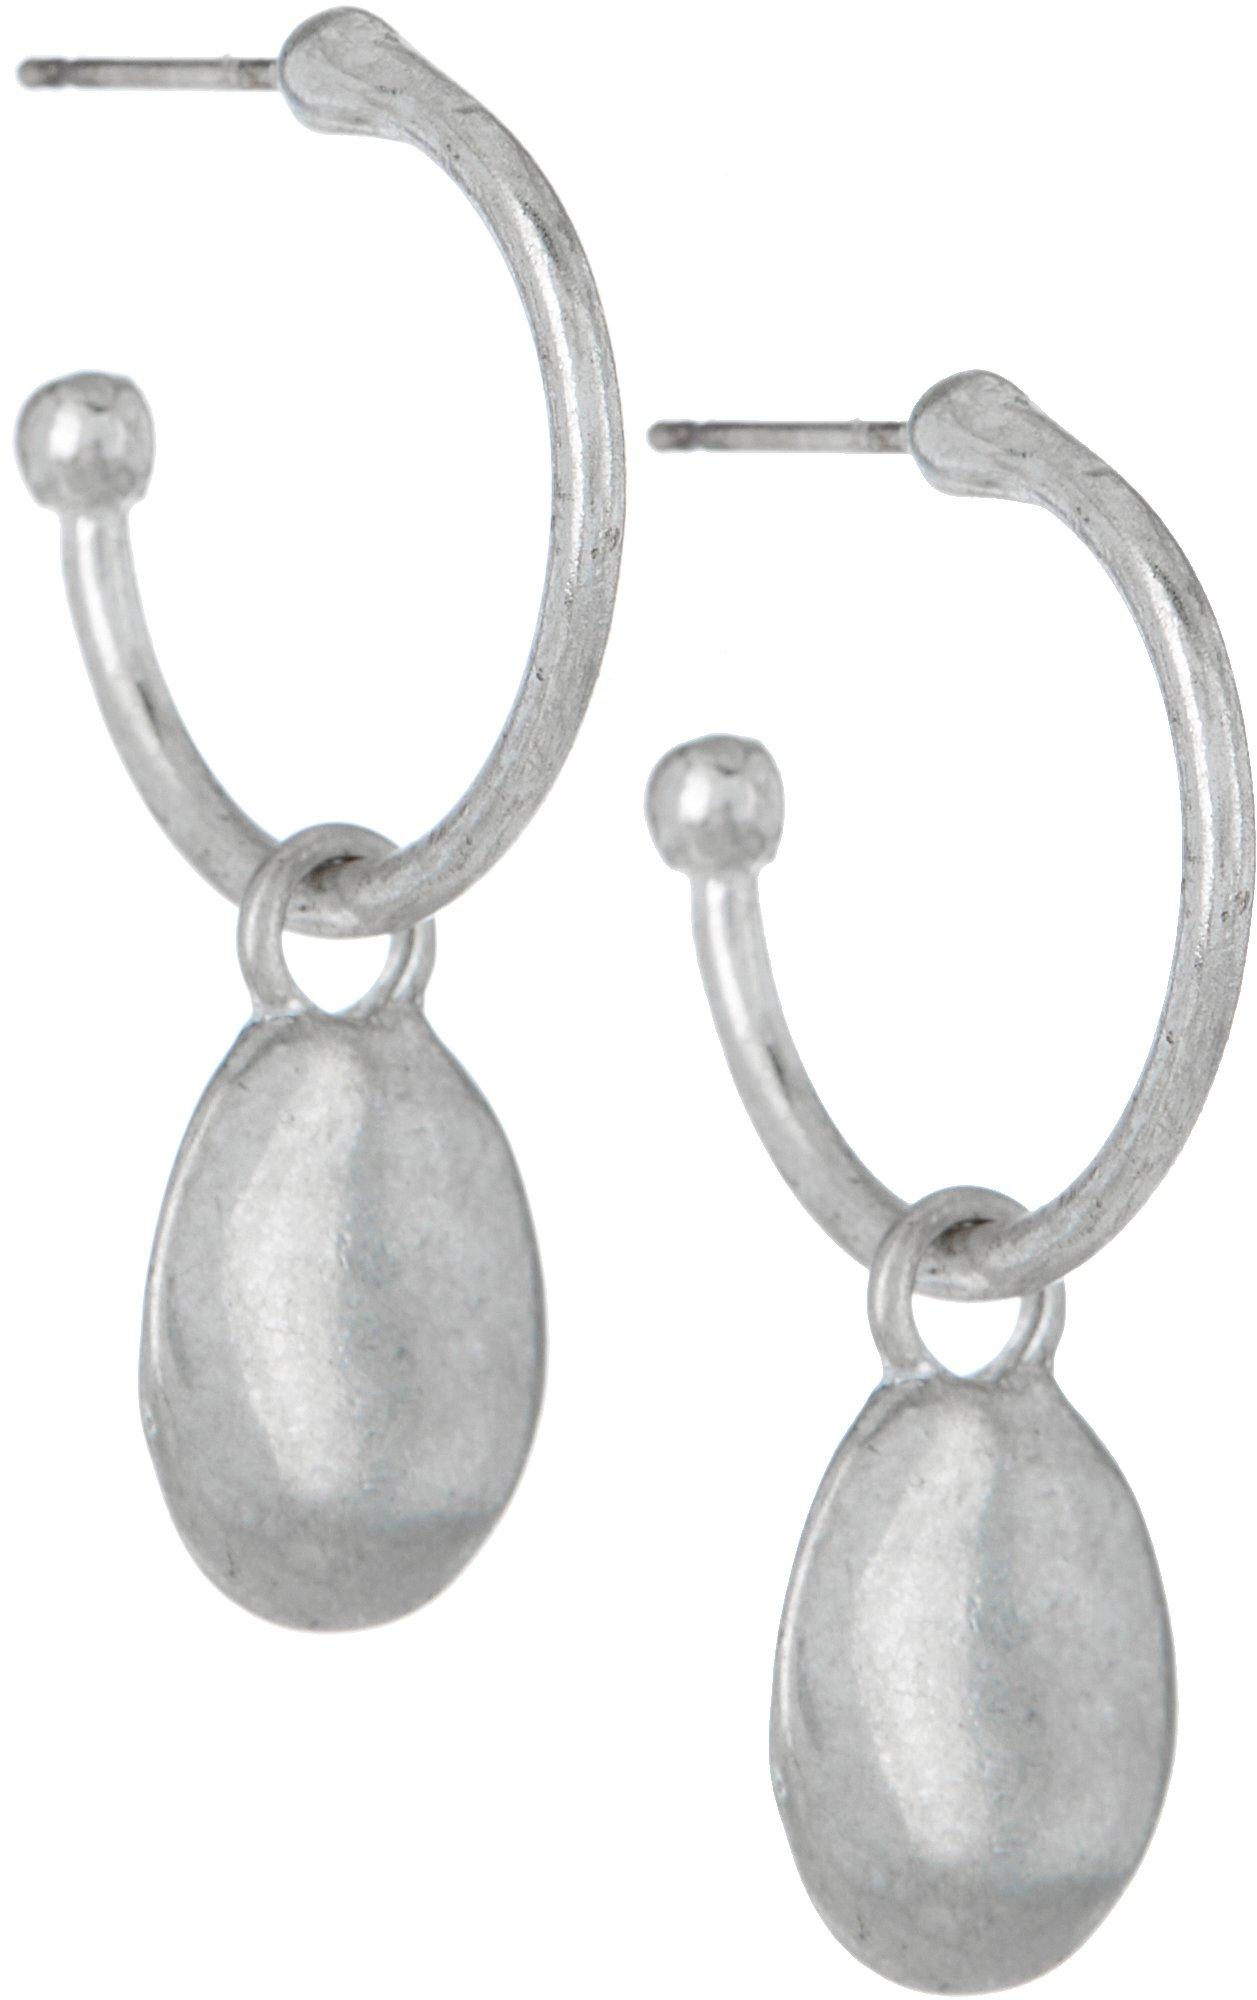 Bella Del Mare C-Hoop Ovals Dangle Earrings